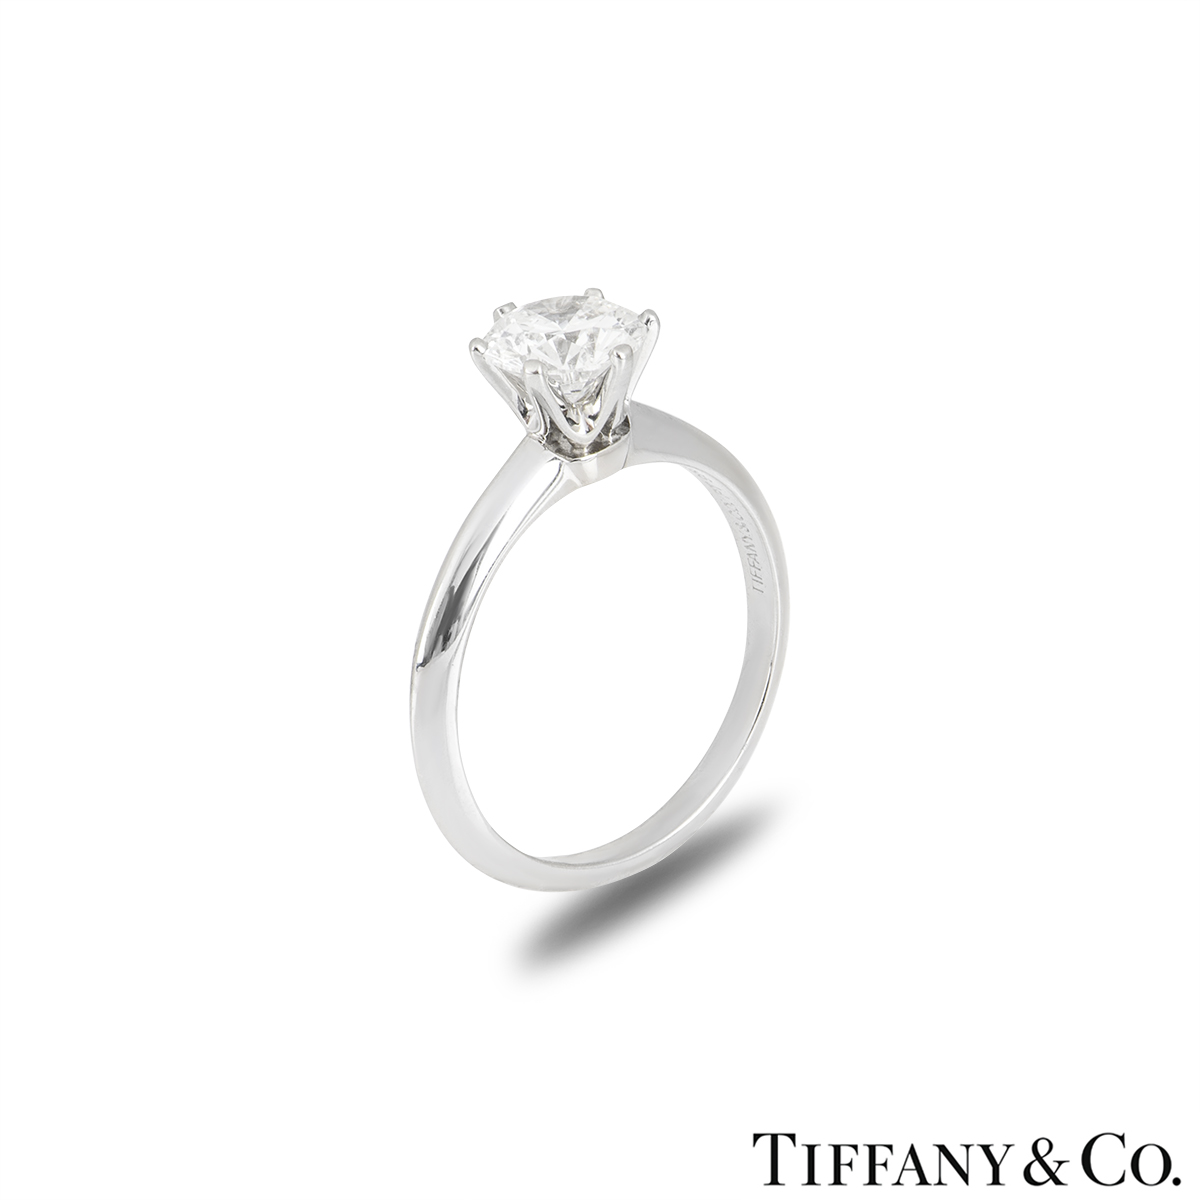 Tiffany & Co. Platinum Diamond Setting Ring 1.07ct E/VVS2